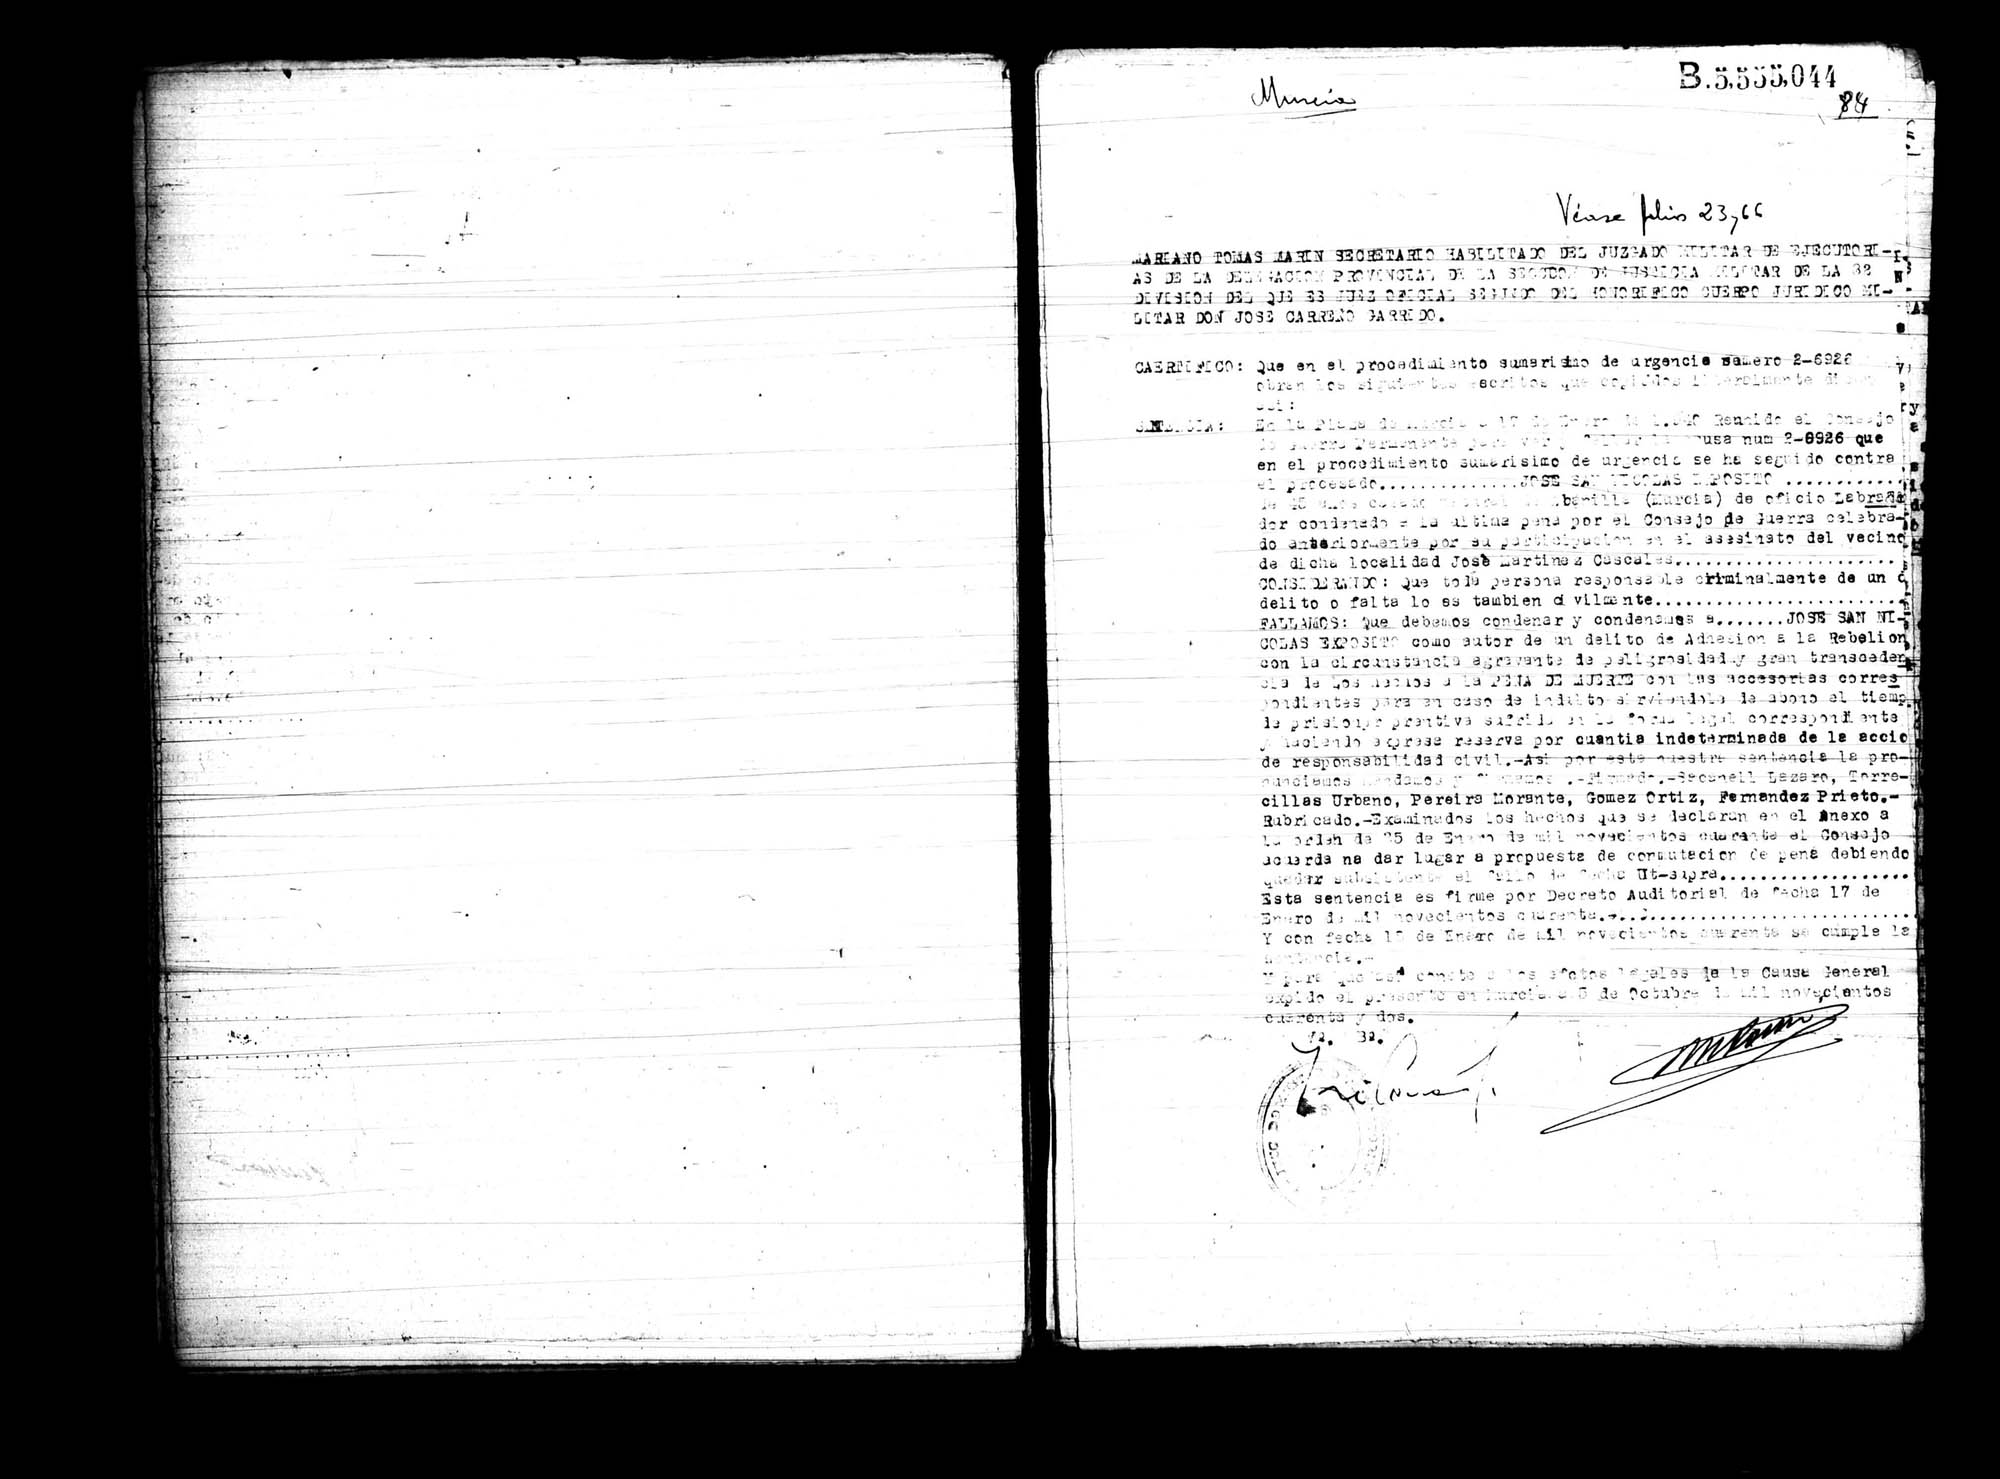 Certificado de la sentencia pronunciada contra José San Nicolás Expósito, causa 2-6926, el 17 de enero de 1940 en Murcia.